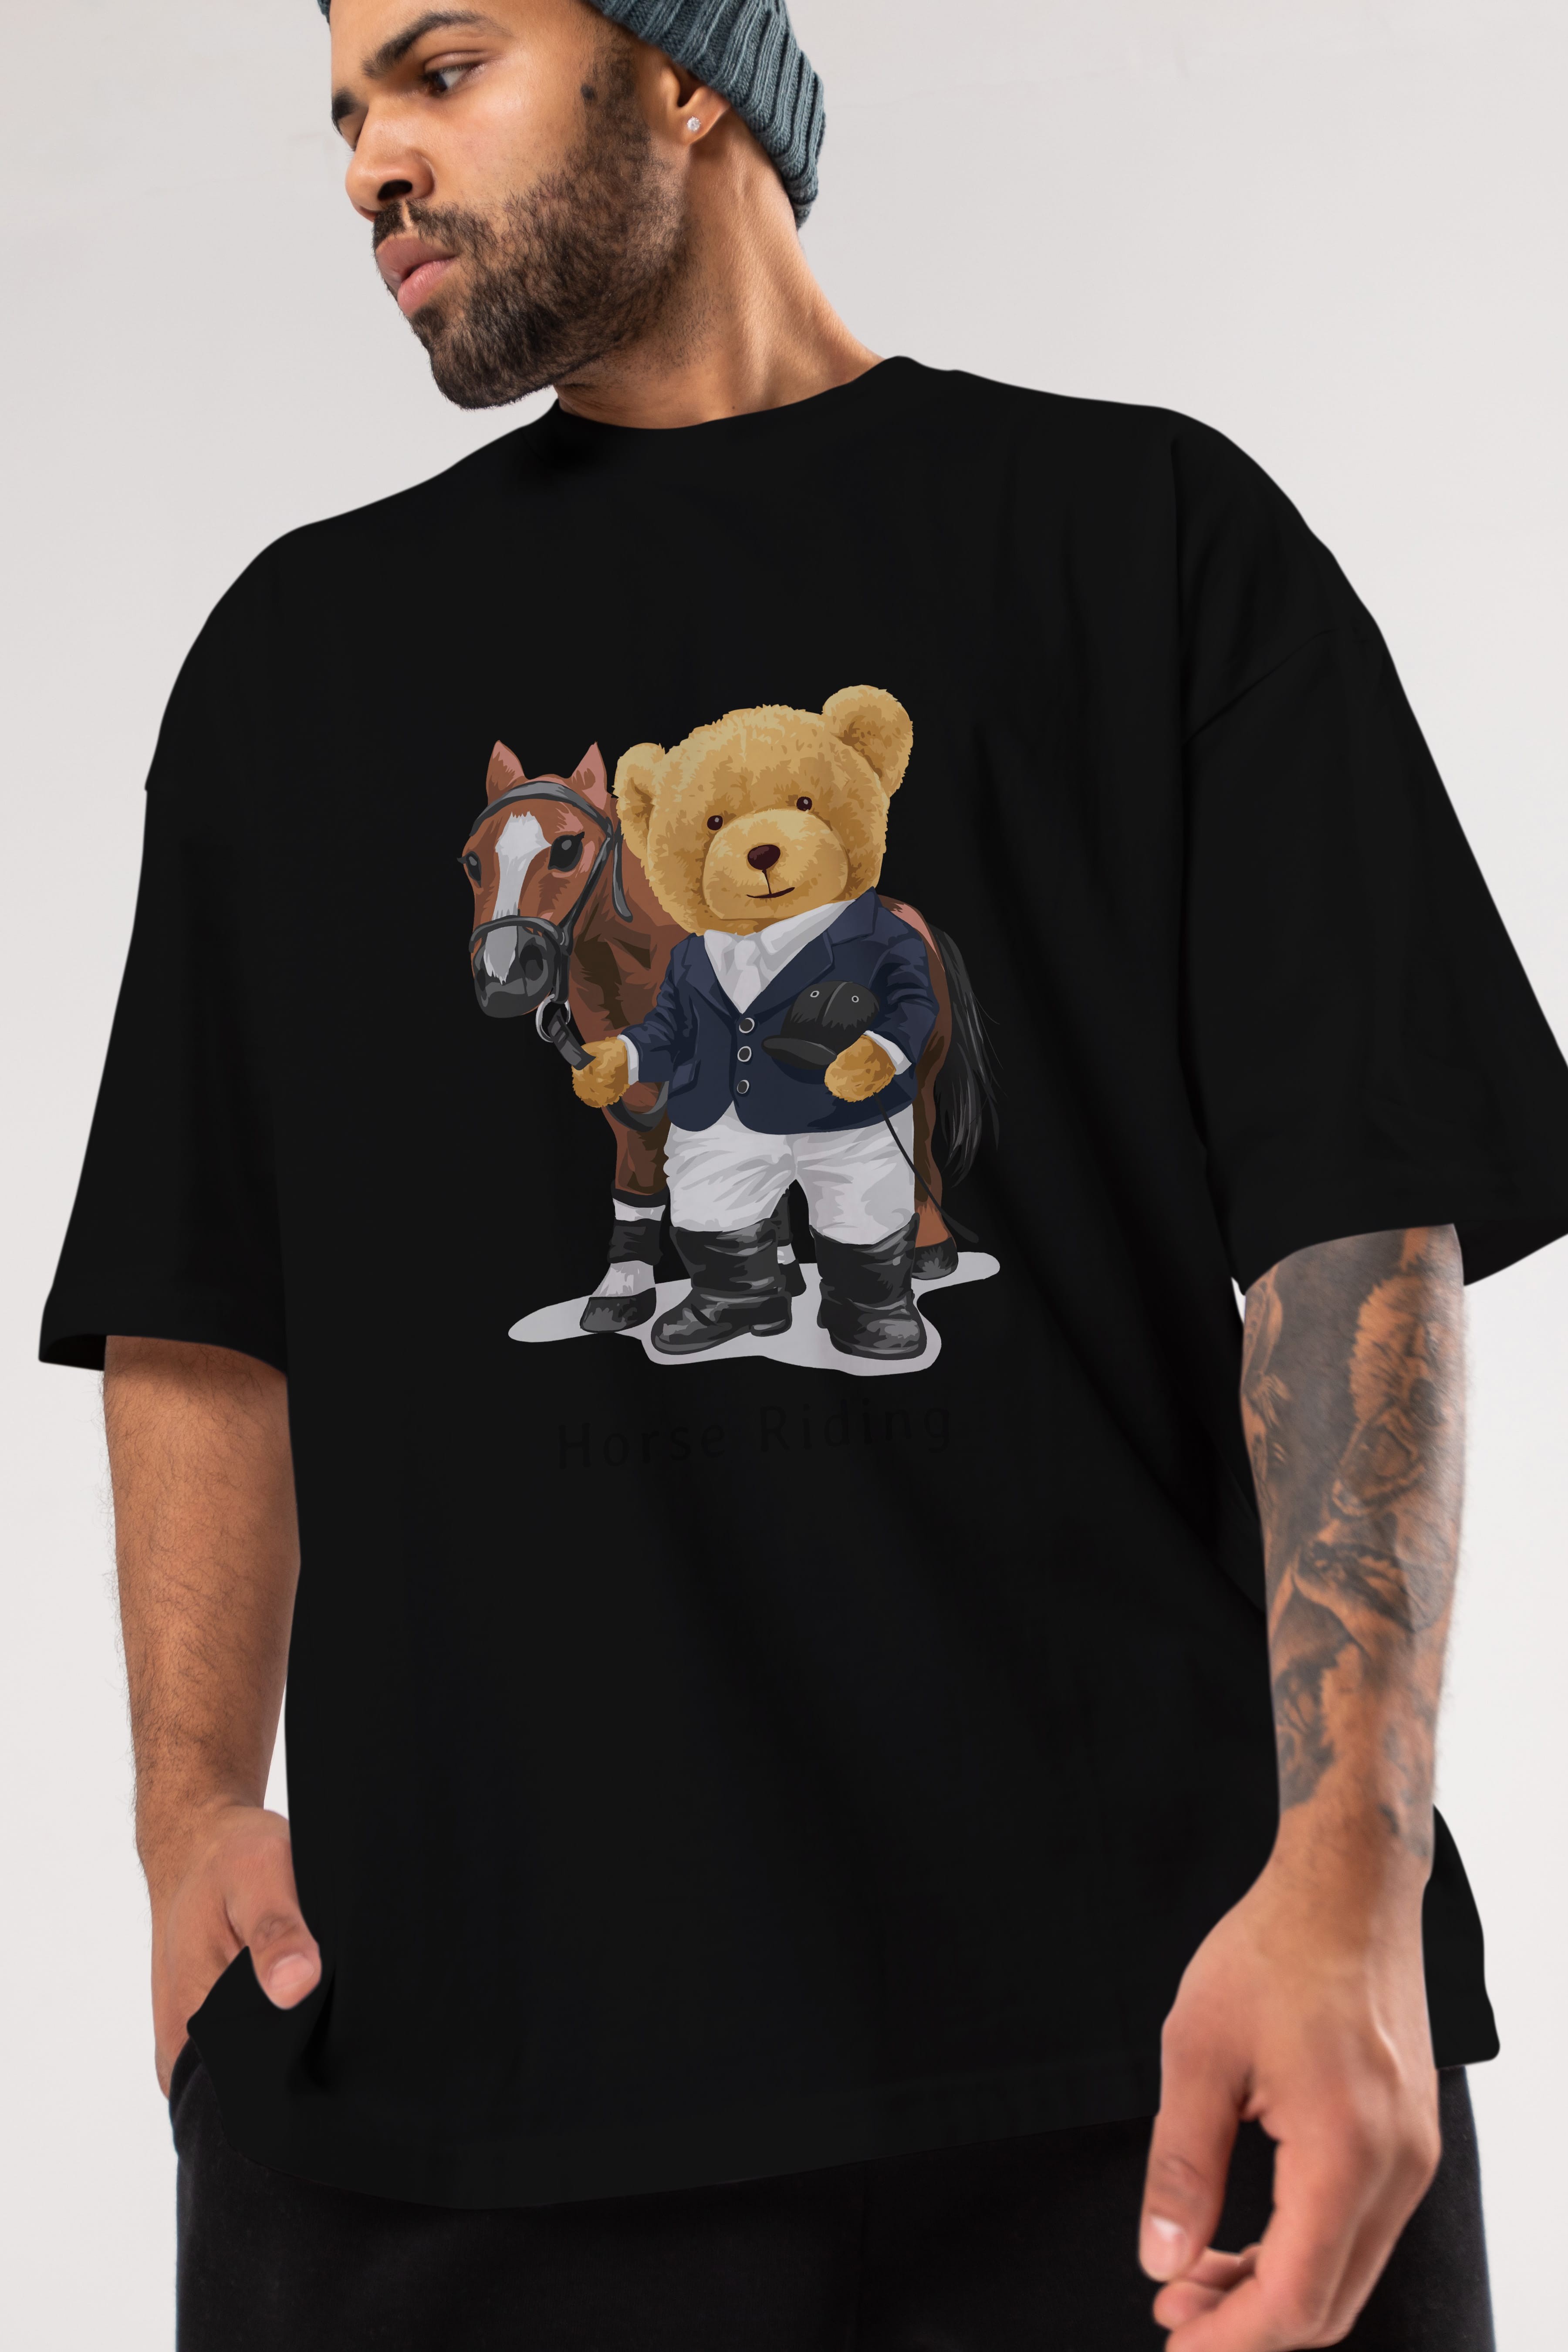 Teddy Bear Horse Riding Ön Baskılı Oversize t-shirt Erkek Kadın Unisex %100 Pamuk